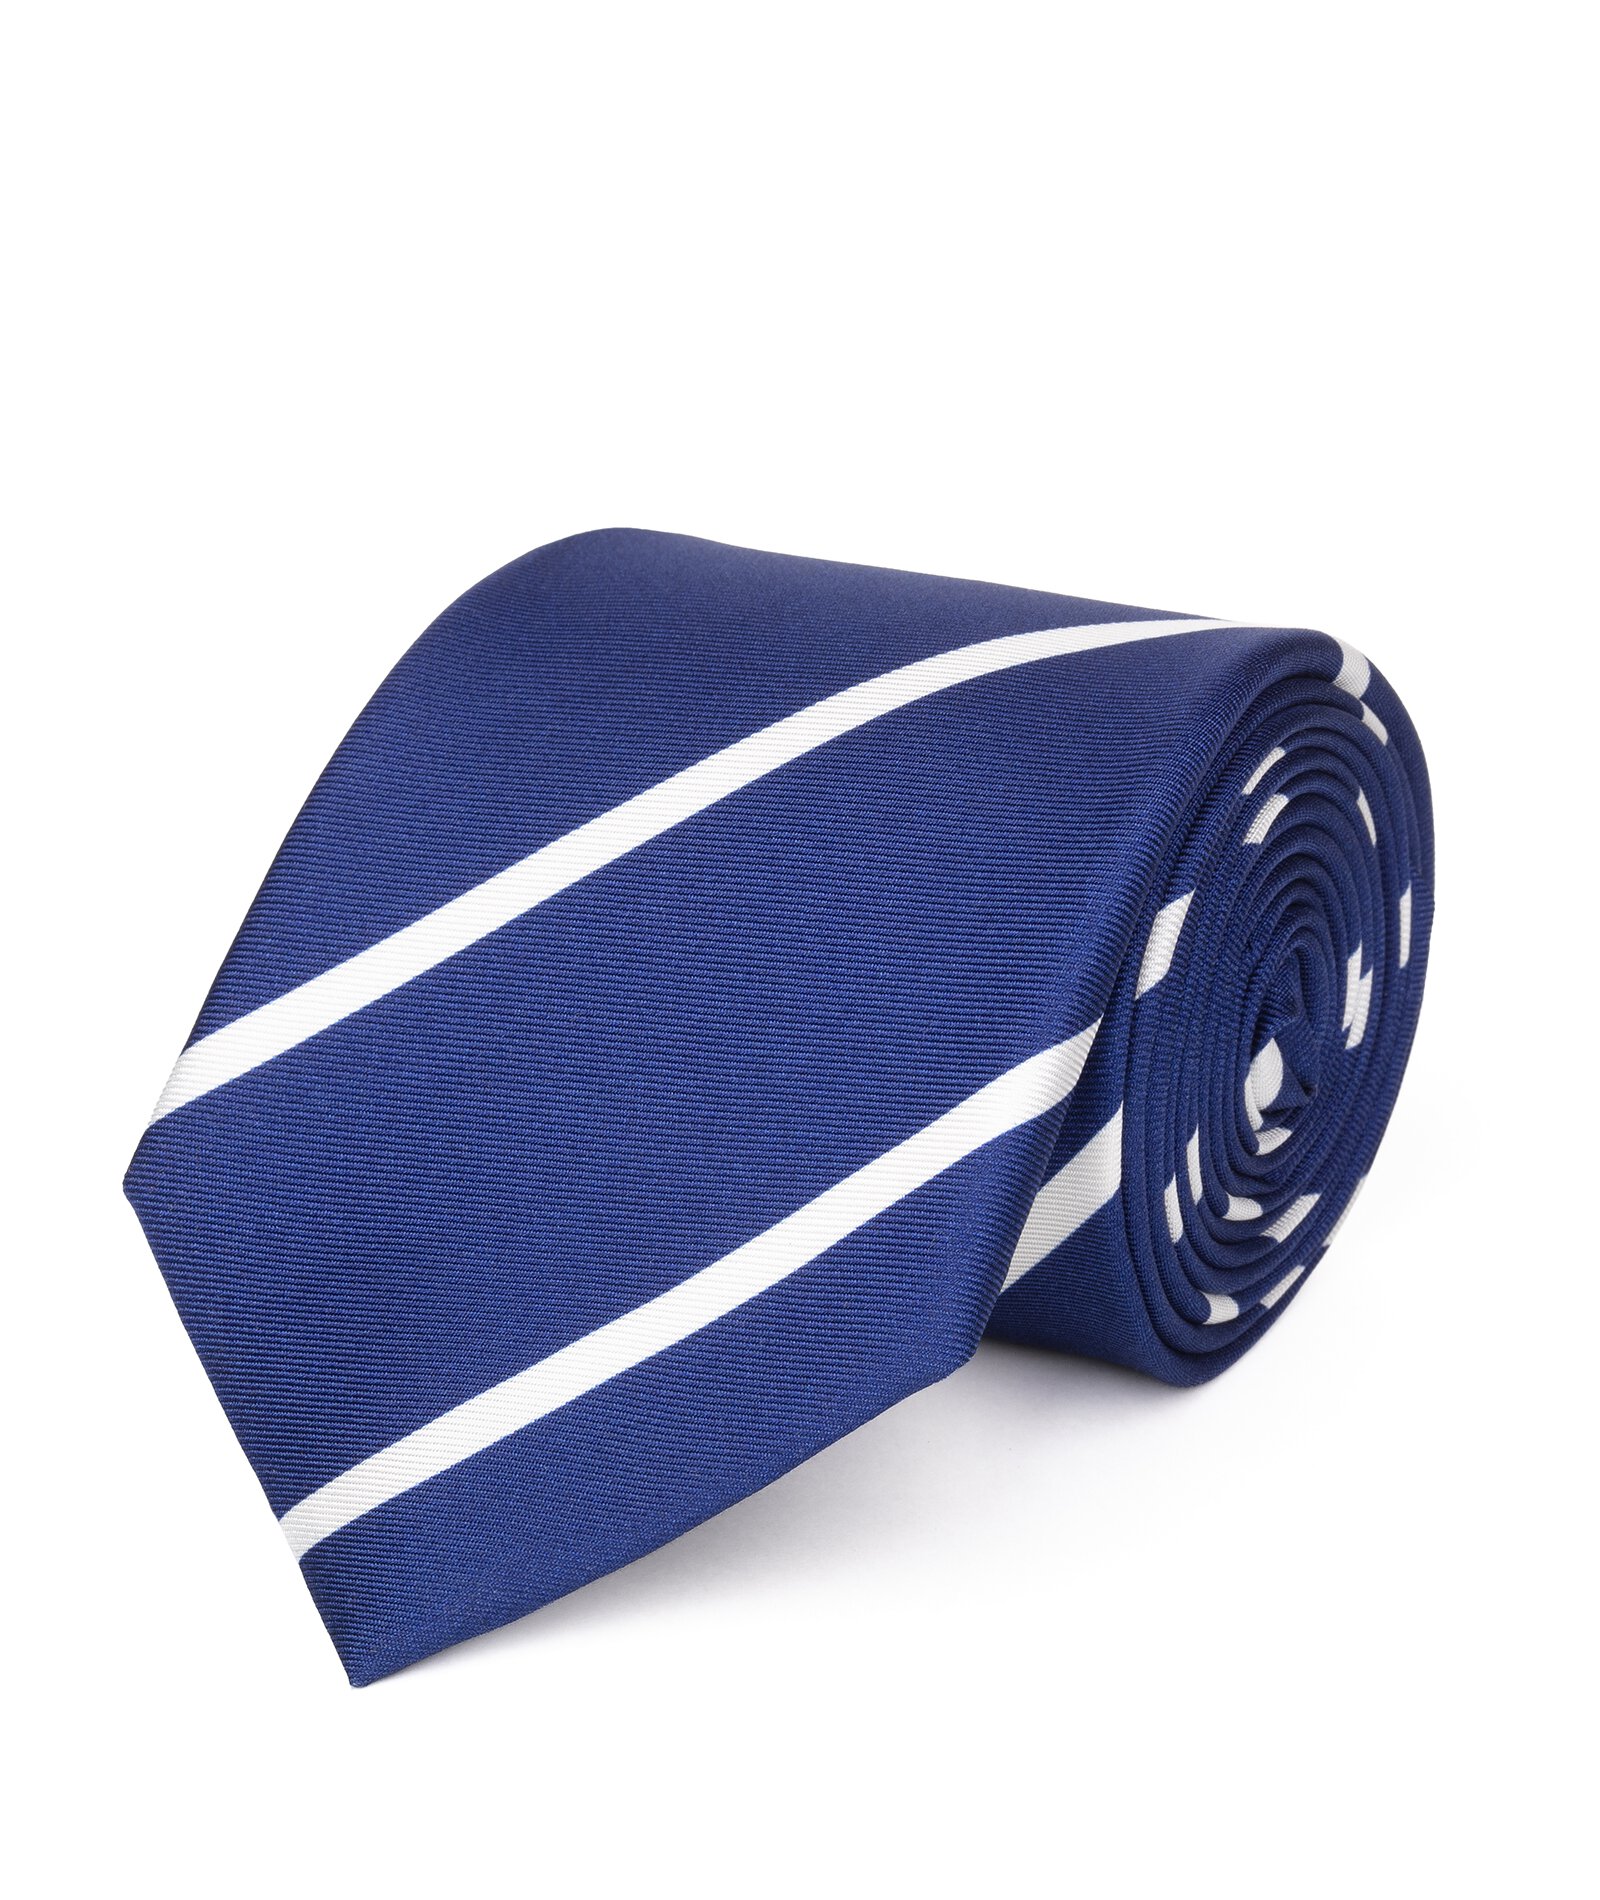 Image of Cravatta su misura, Lanieri, Blu e Bianco Regimental in twill di Seta, Quattro Stagioni | Lanieri